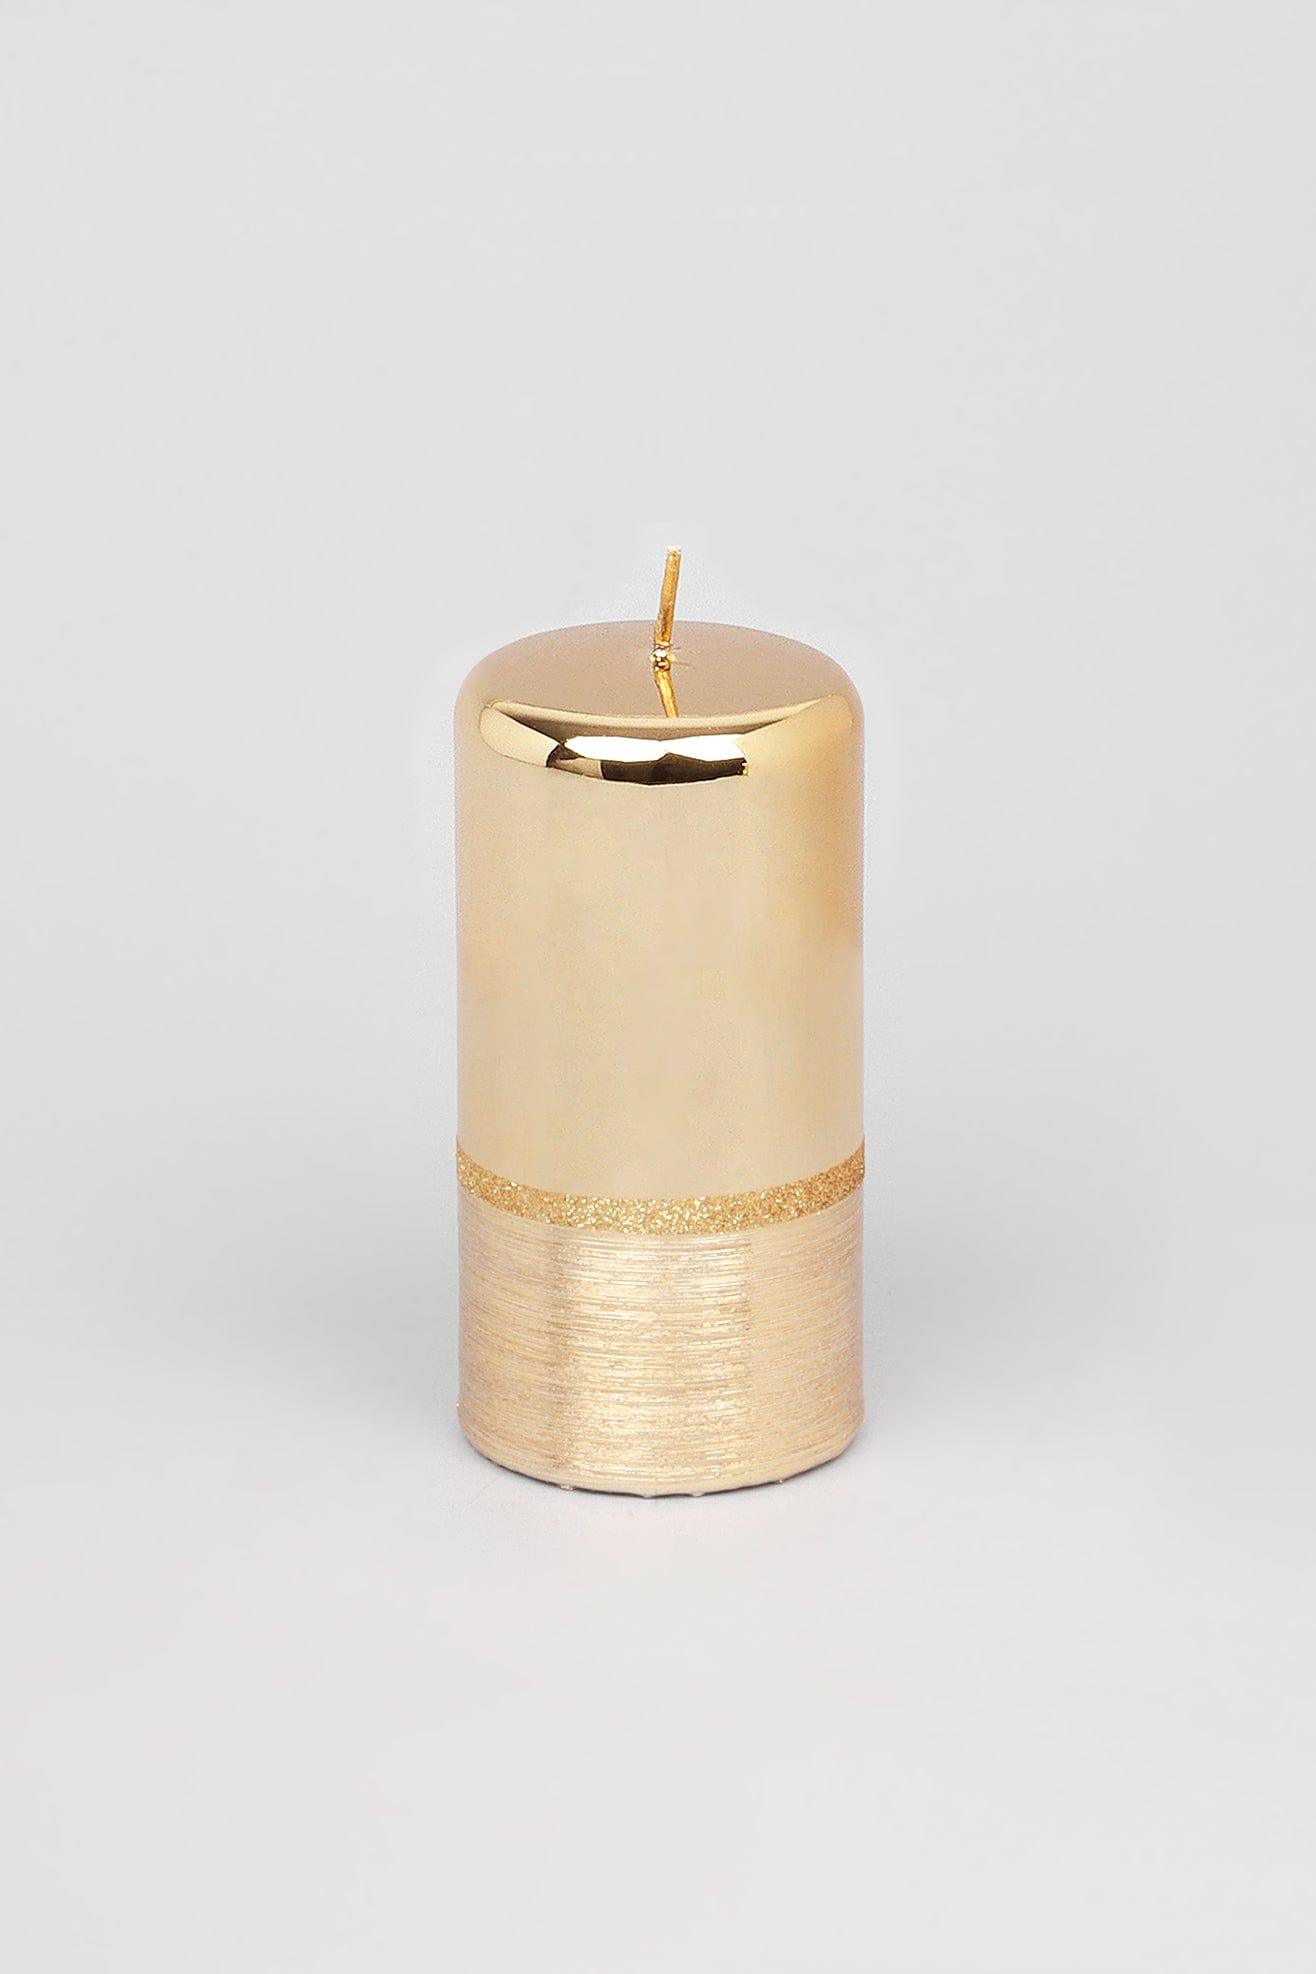 G Decor Candles Gold / Large pillar Gold Glitter Glass Effect Reflecting Plain Gloss Pillar Candles